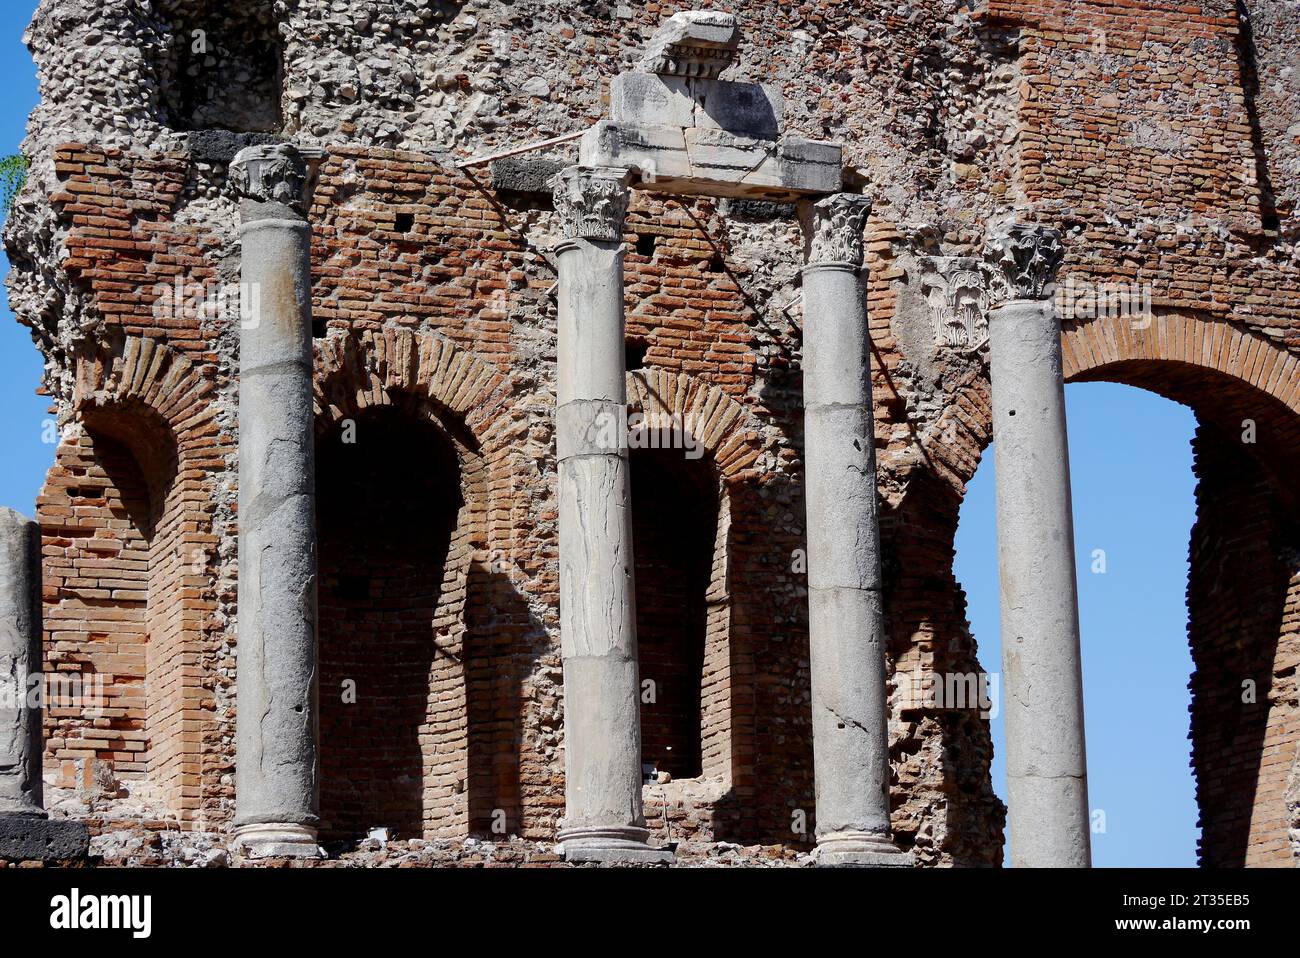 Dettagli delle rovine dell'Antico Teatro Greco di Taormina (Teatro antico di Taormina) a Taormina, Sicilia, Italia, UE. Foto Stock